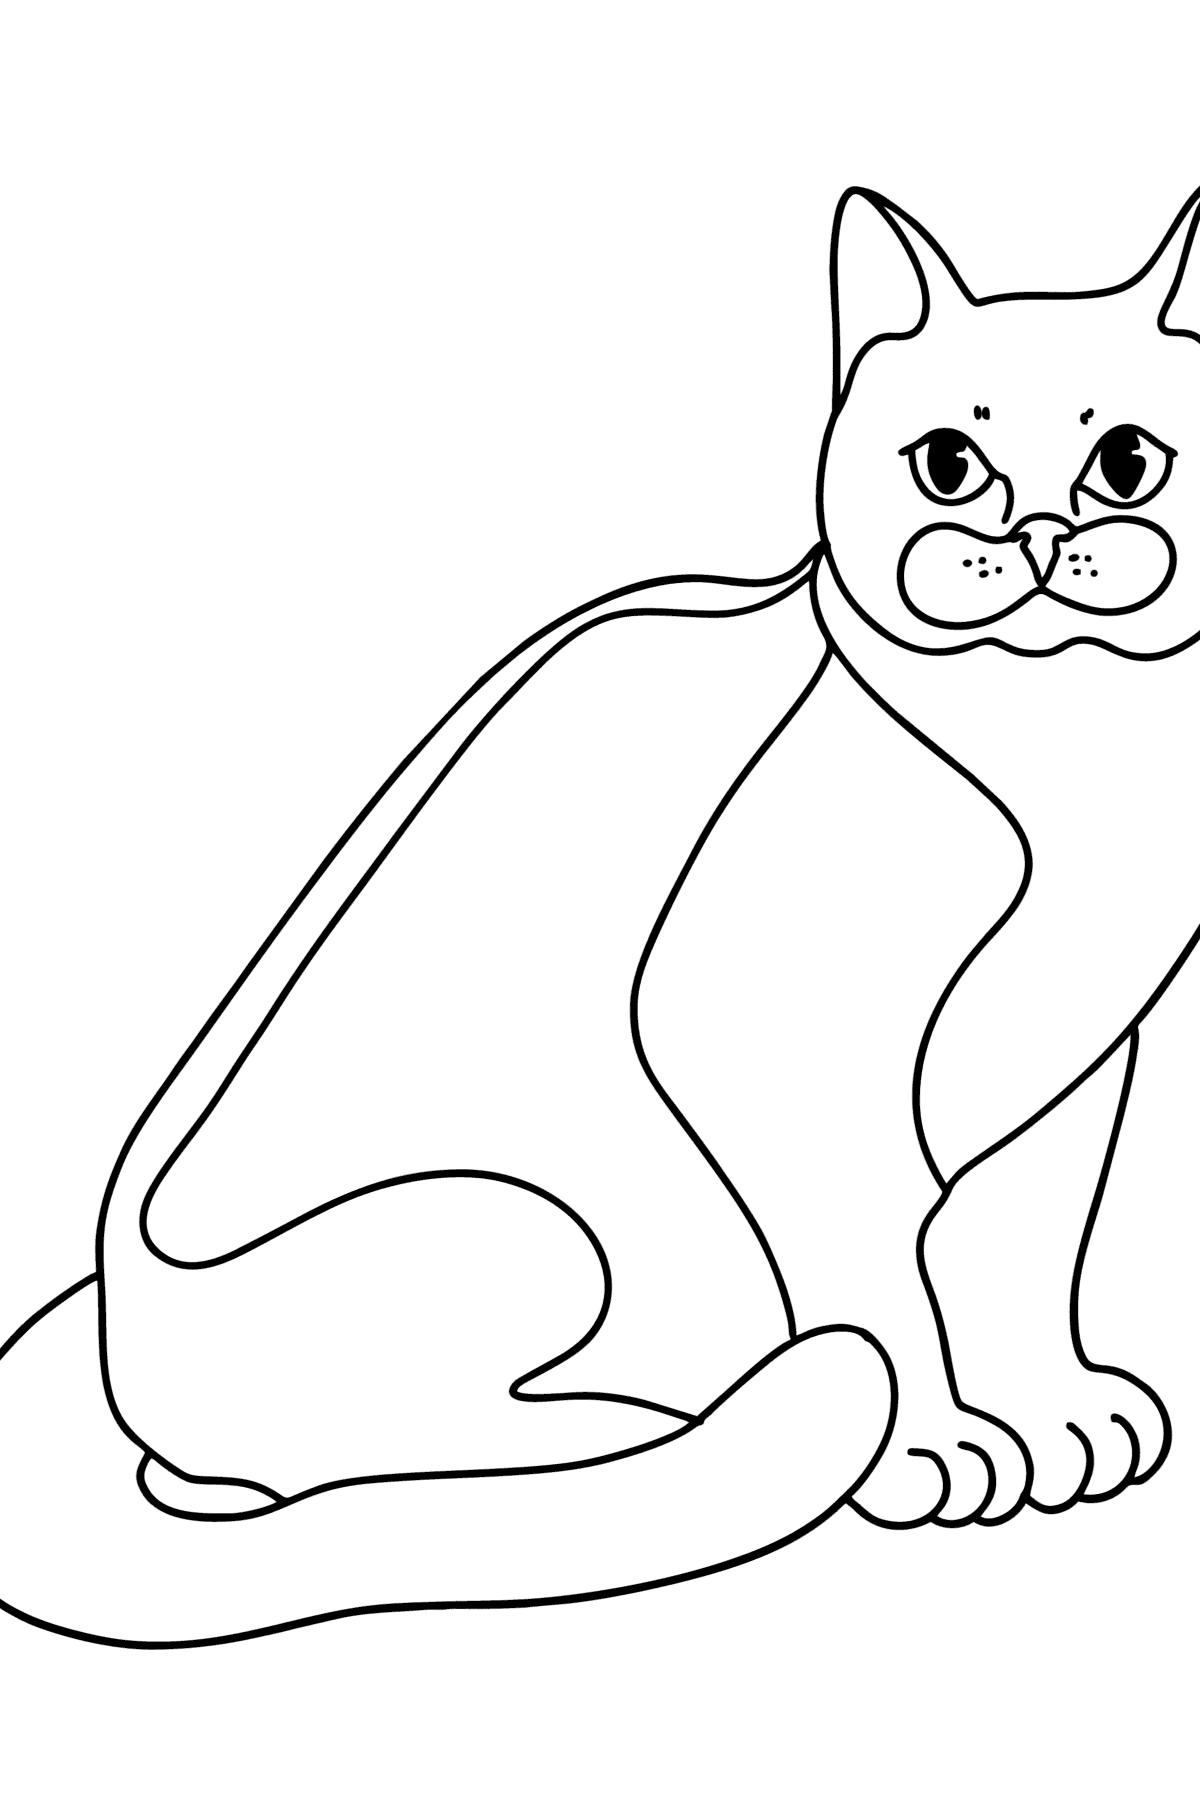 Boyama sayfası bombay kedisi - Boyamalar çocuklar için